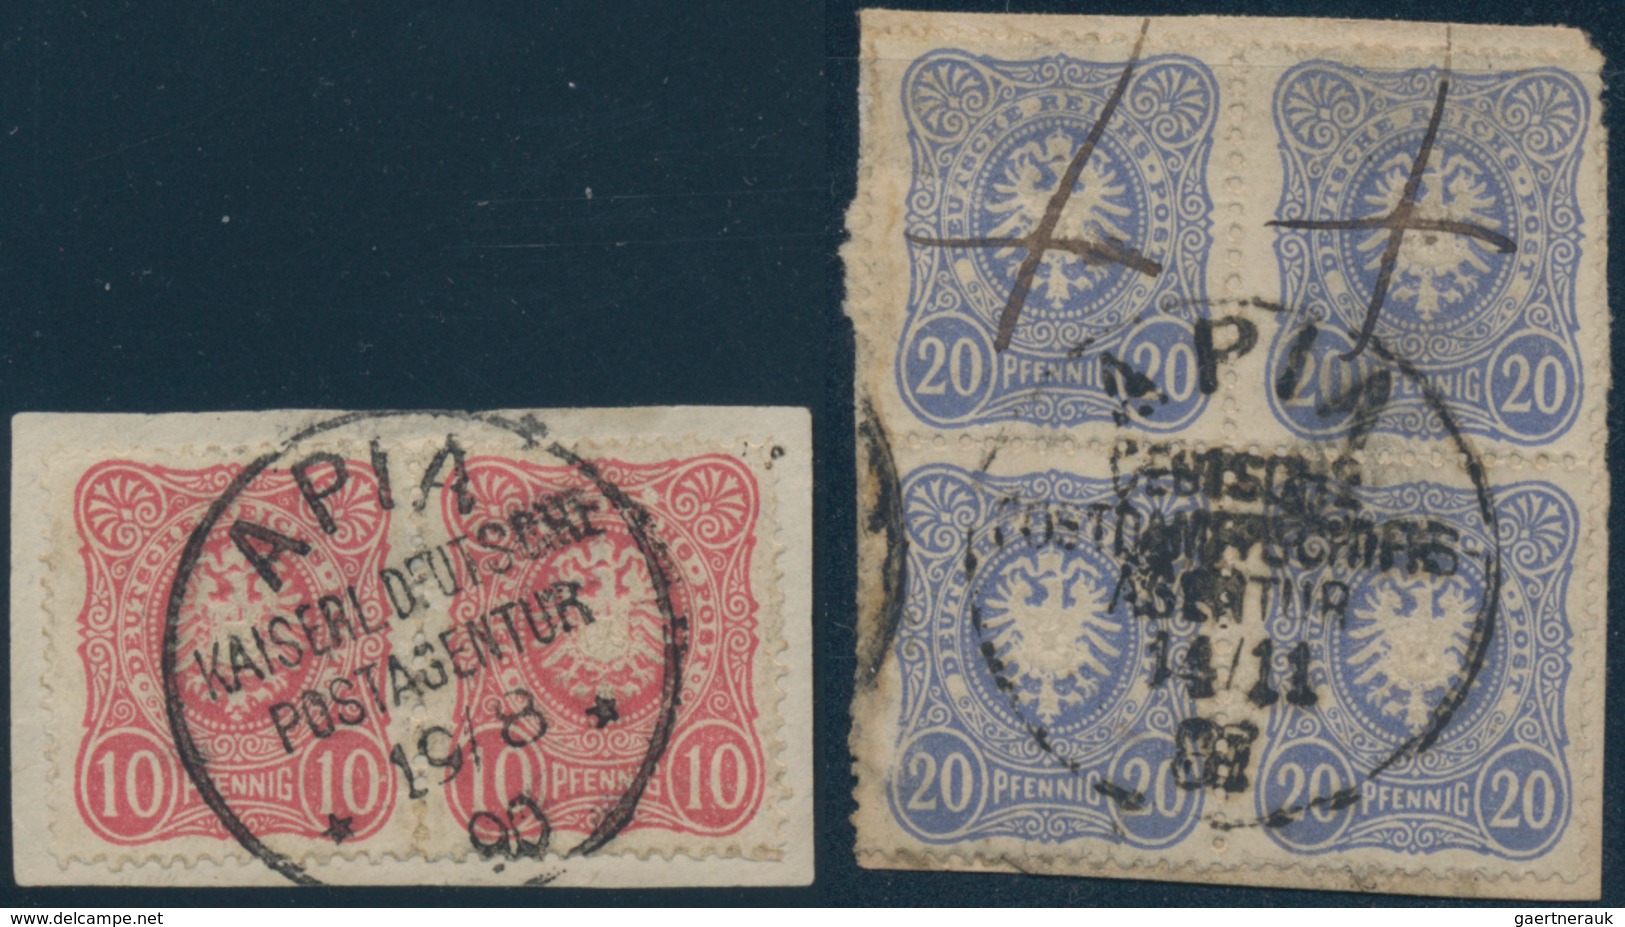 Deutsche Kolonien - Samoa: 1887/1914, nahezu komplette Stempelsammlung der dt. Postanstalten auf Sam